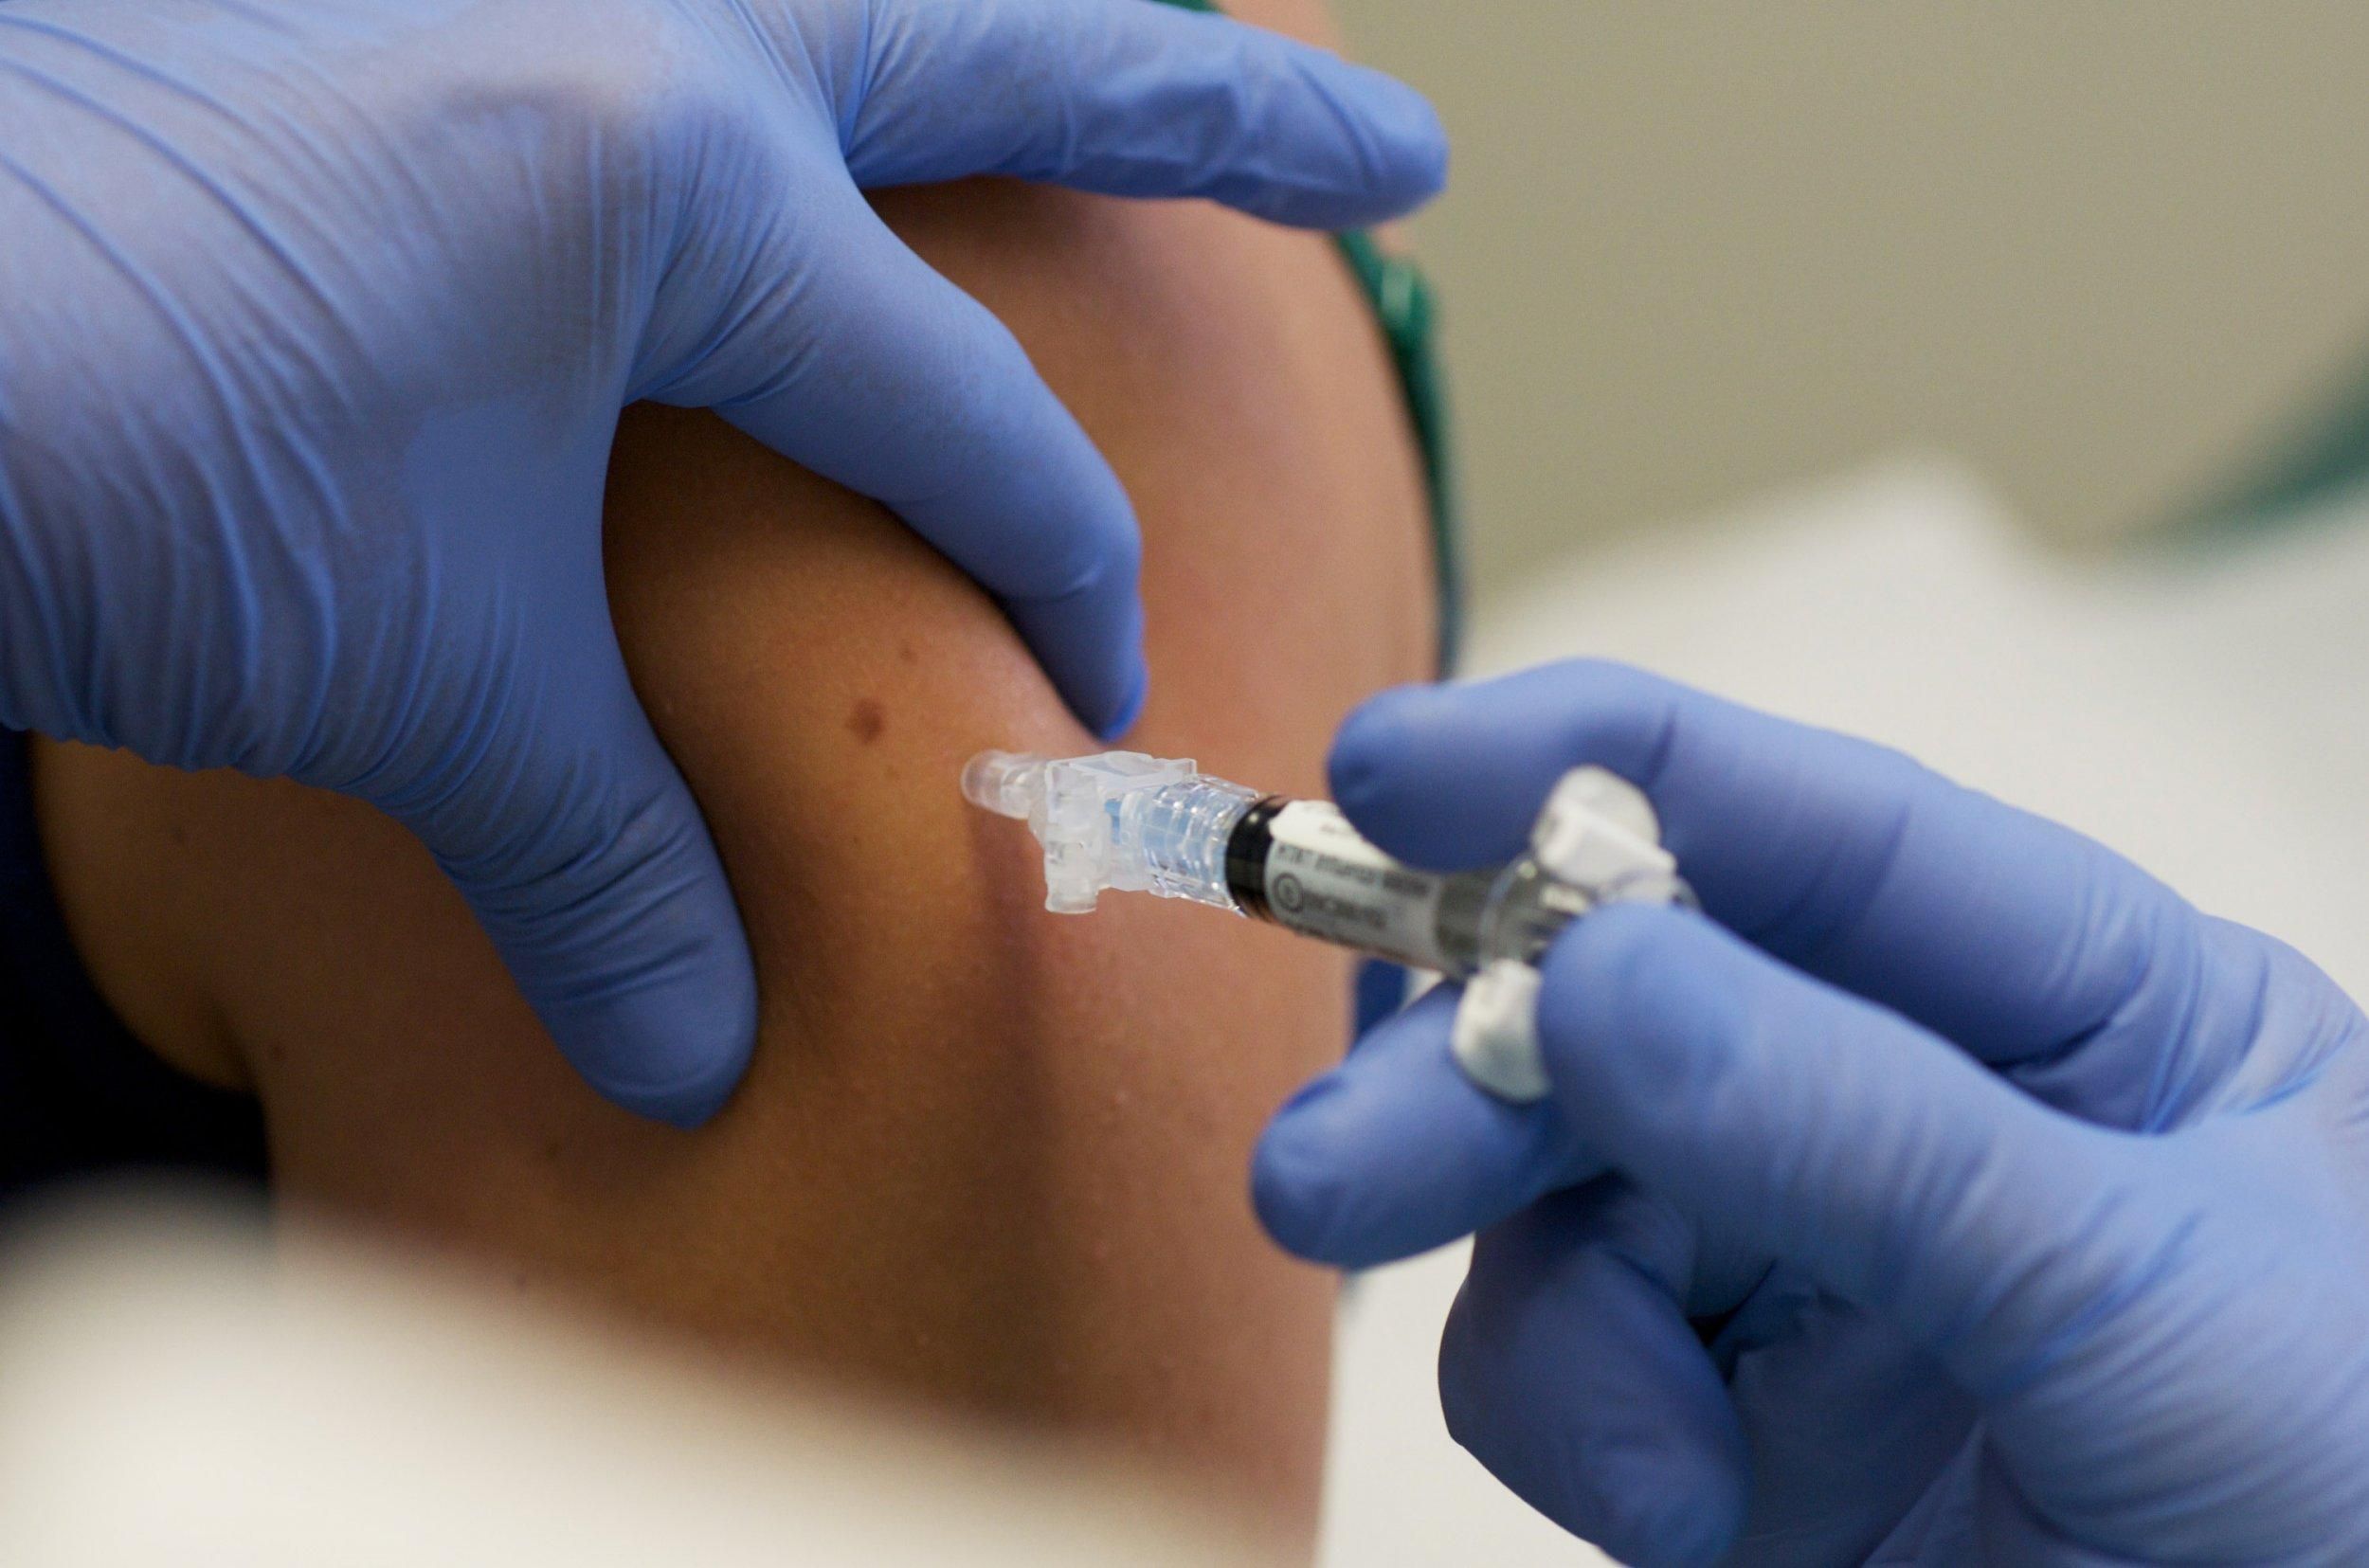 Уряд виділив додаткових 6,5 мільярдів гривень на закупівлю COVID-вакцин
